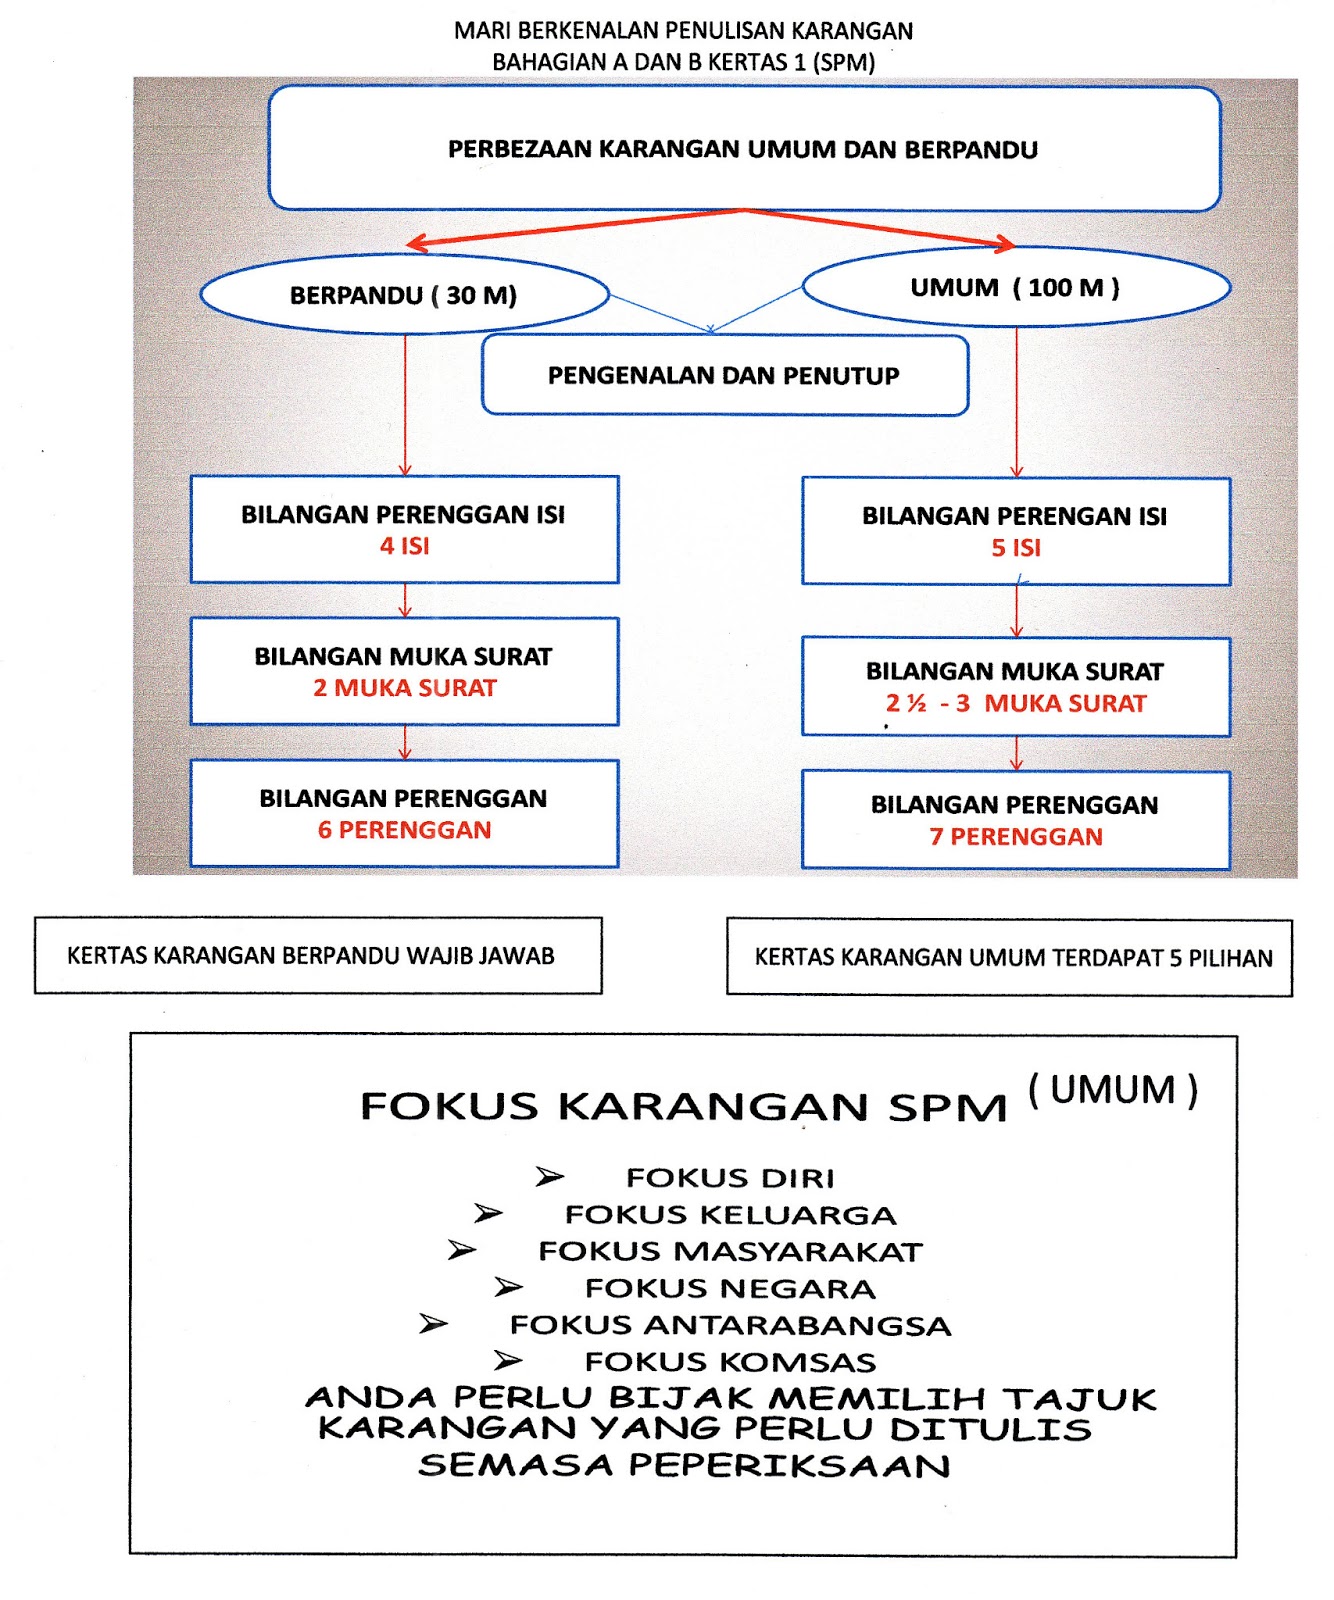 Laman Bahasa Melayu SPM: Januari 2013